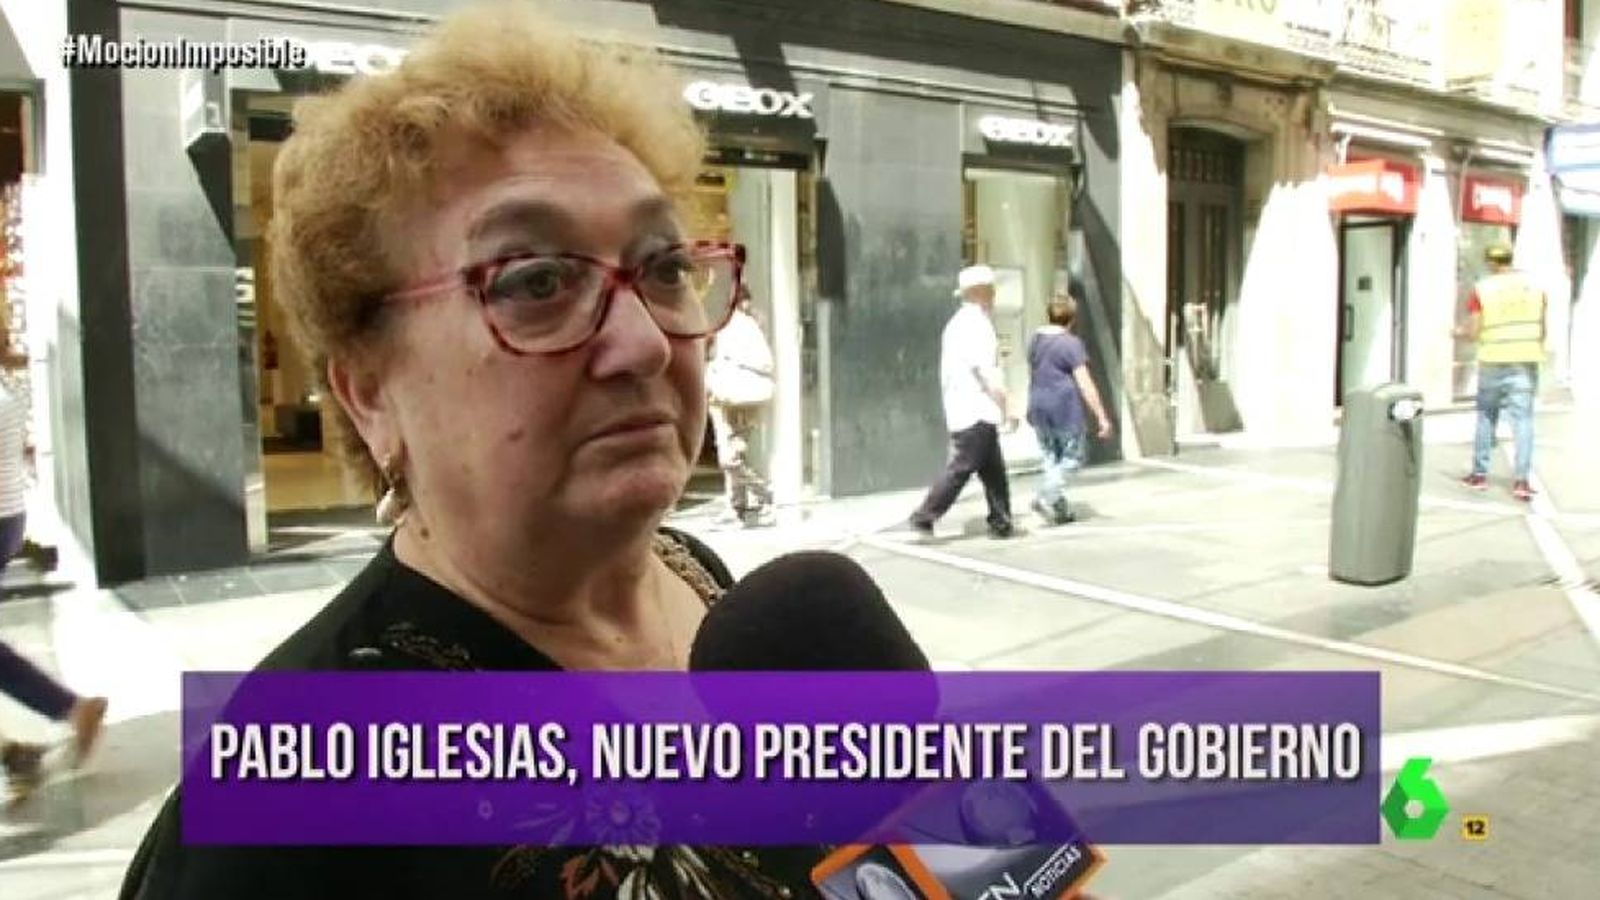 Foto: La última broma de 'El intermedio': Pablo Iglesias, nuevo presidente.